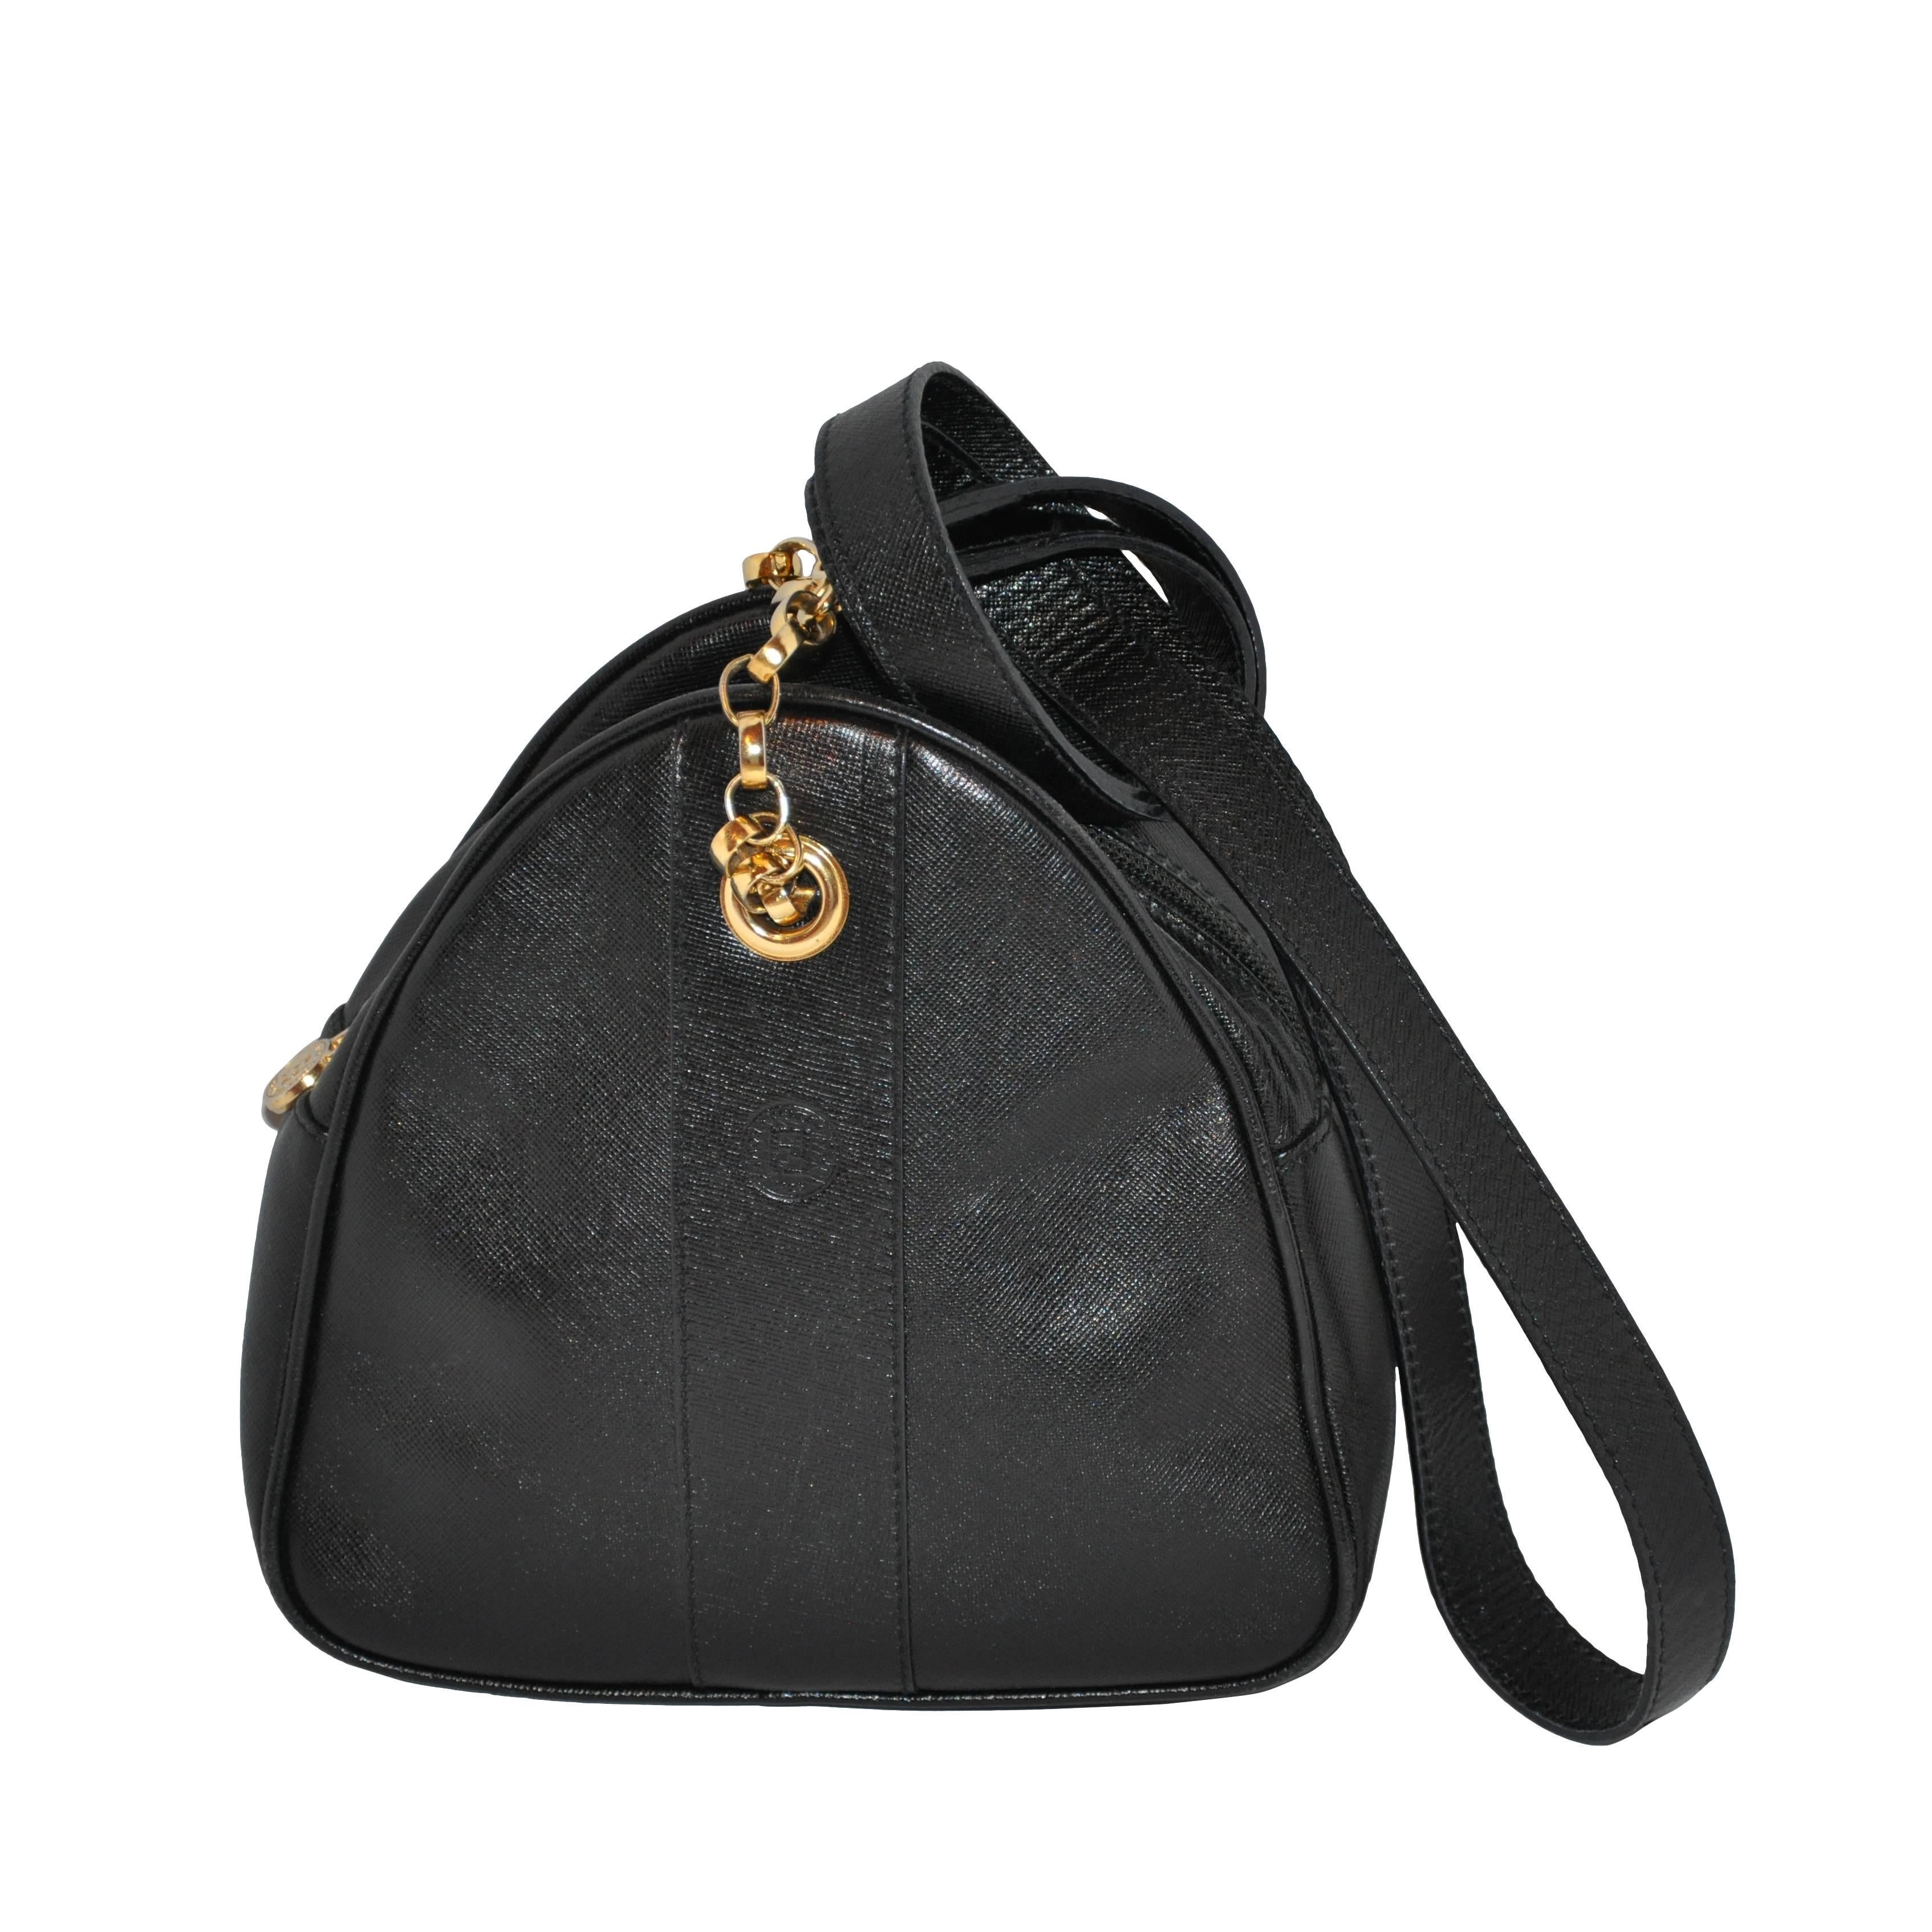 Fendi Black Textured Calfskin with Gold Hardware Small Shoulder Bag For Sale